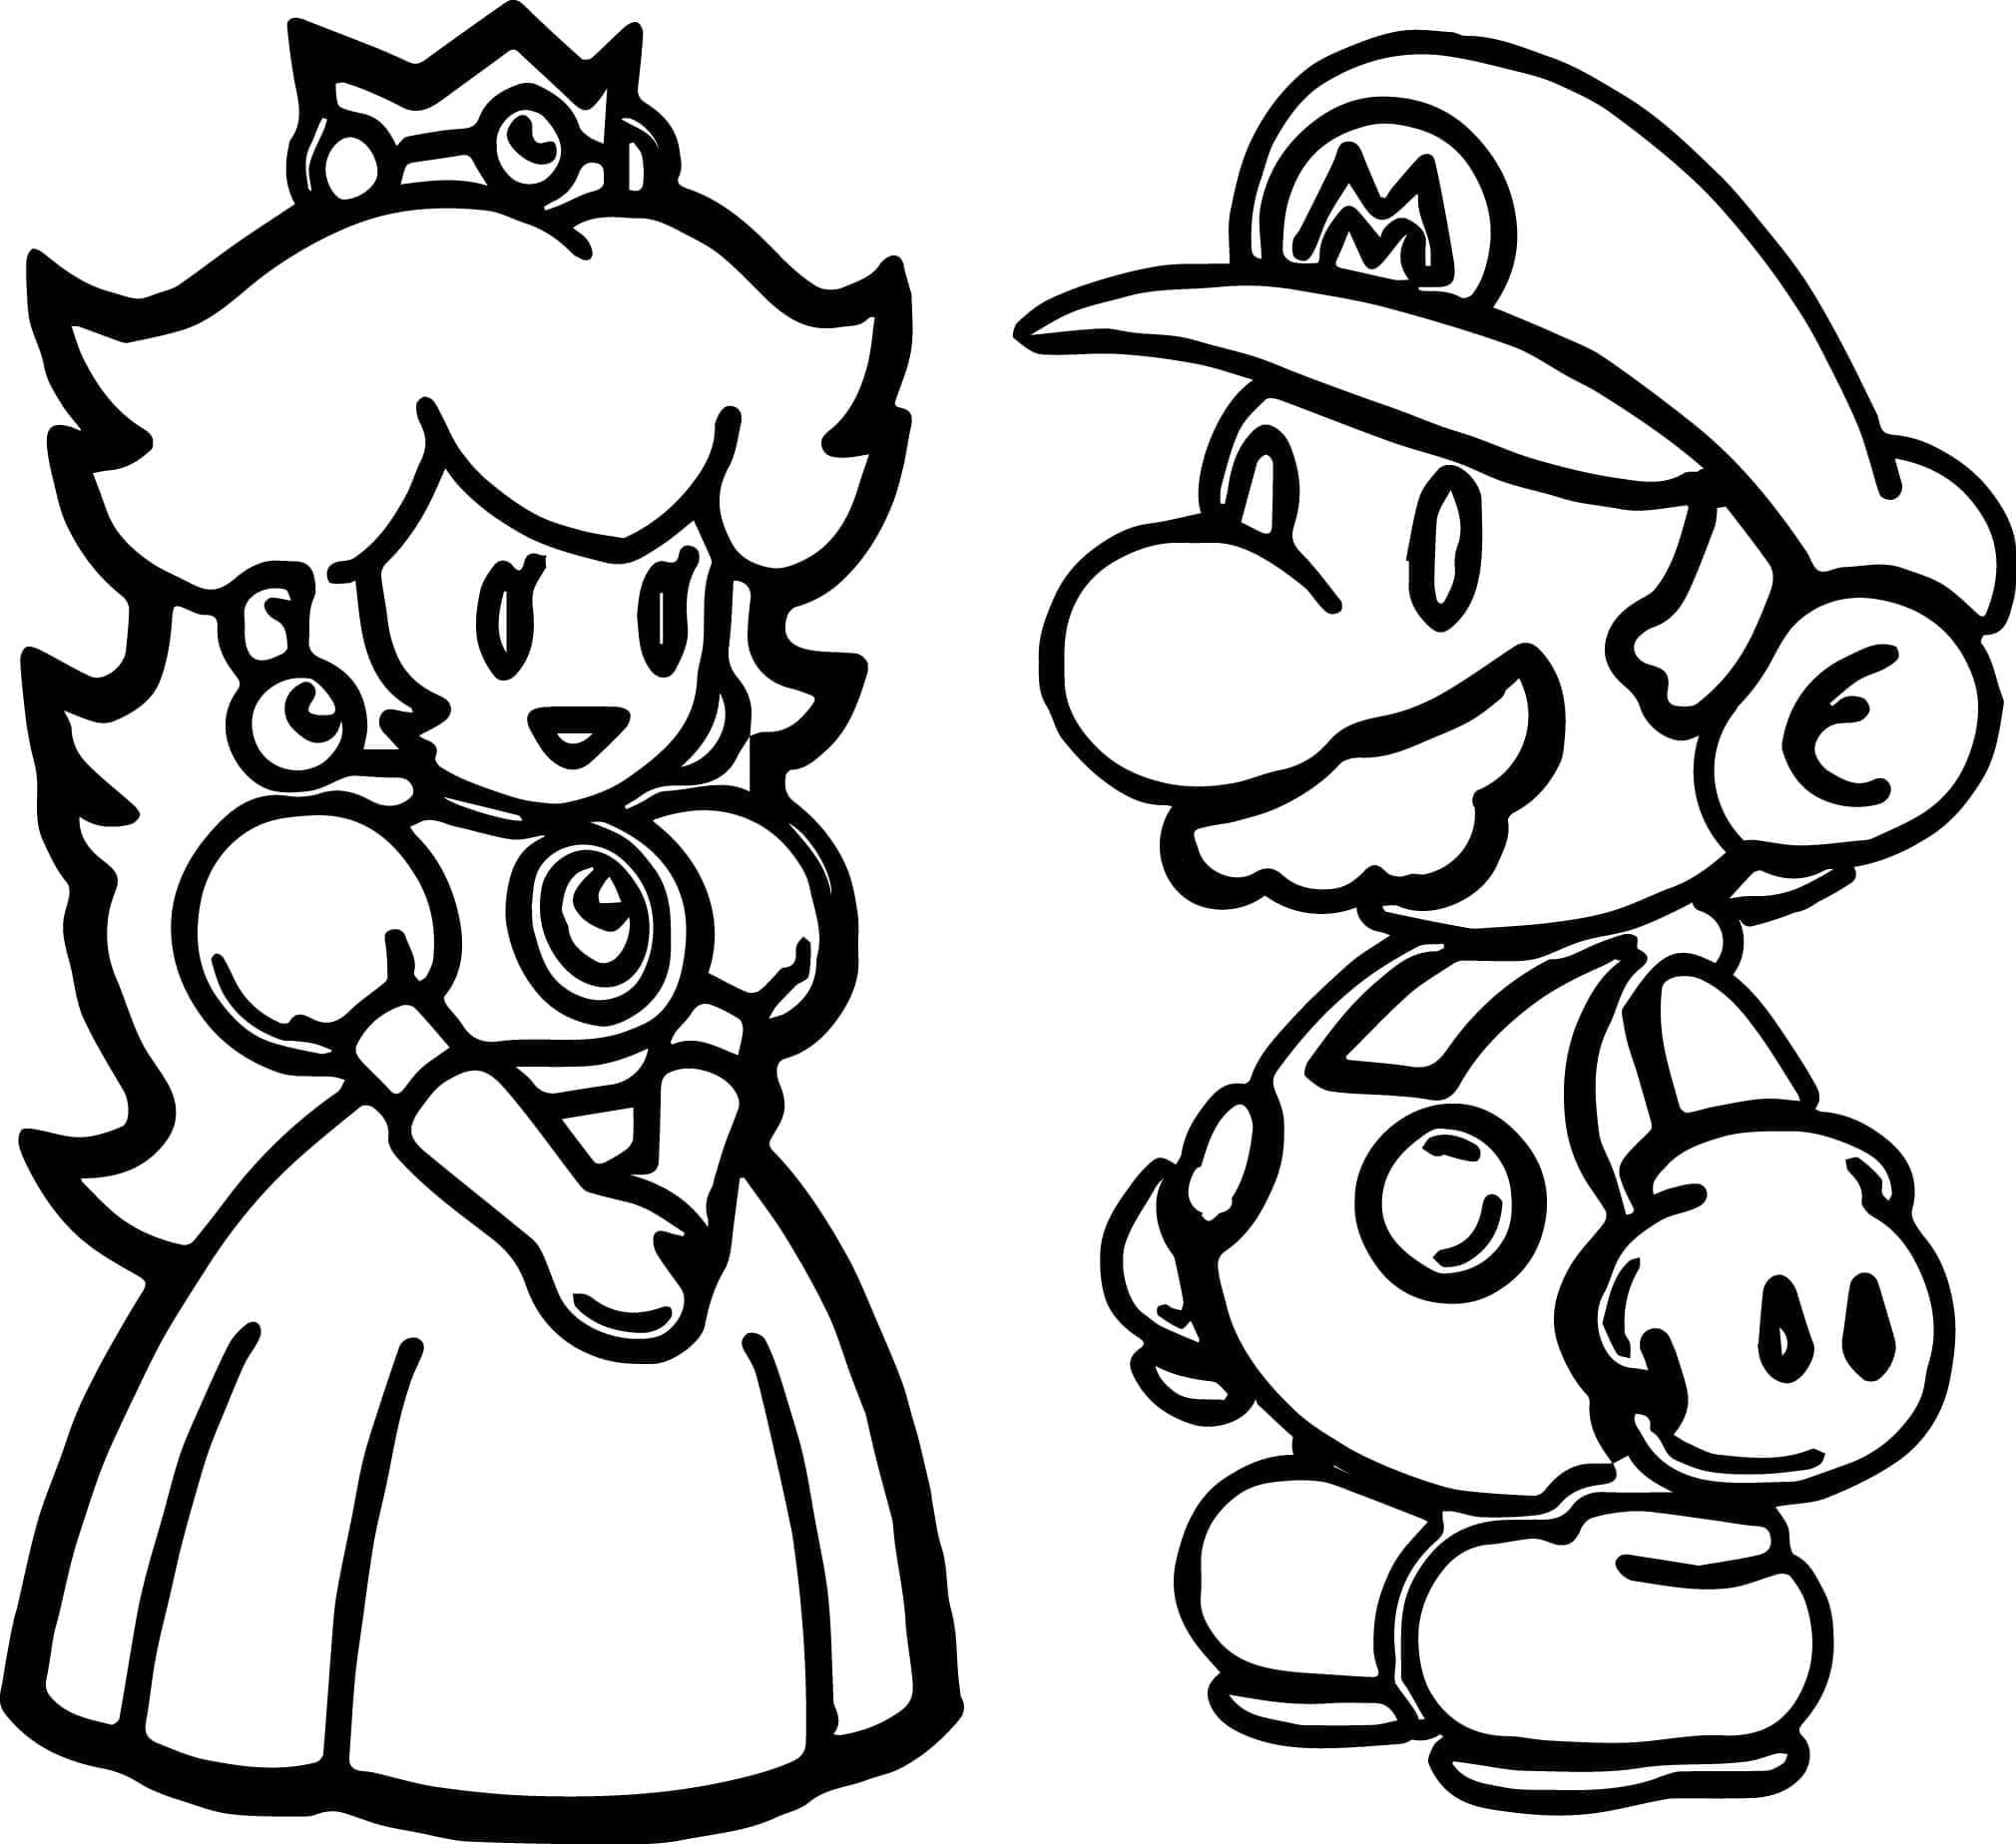 Coloriage Chibi Princesse Peach et Mario